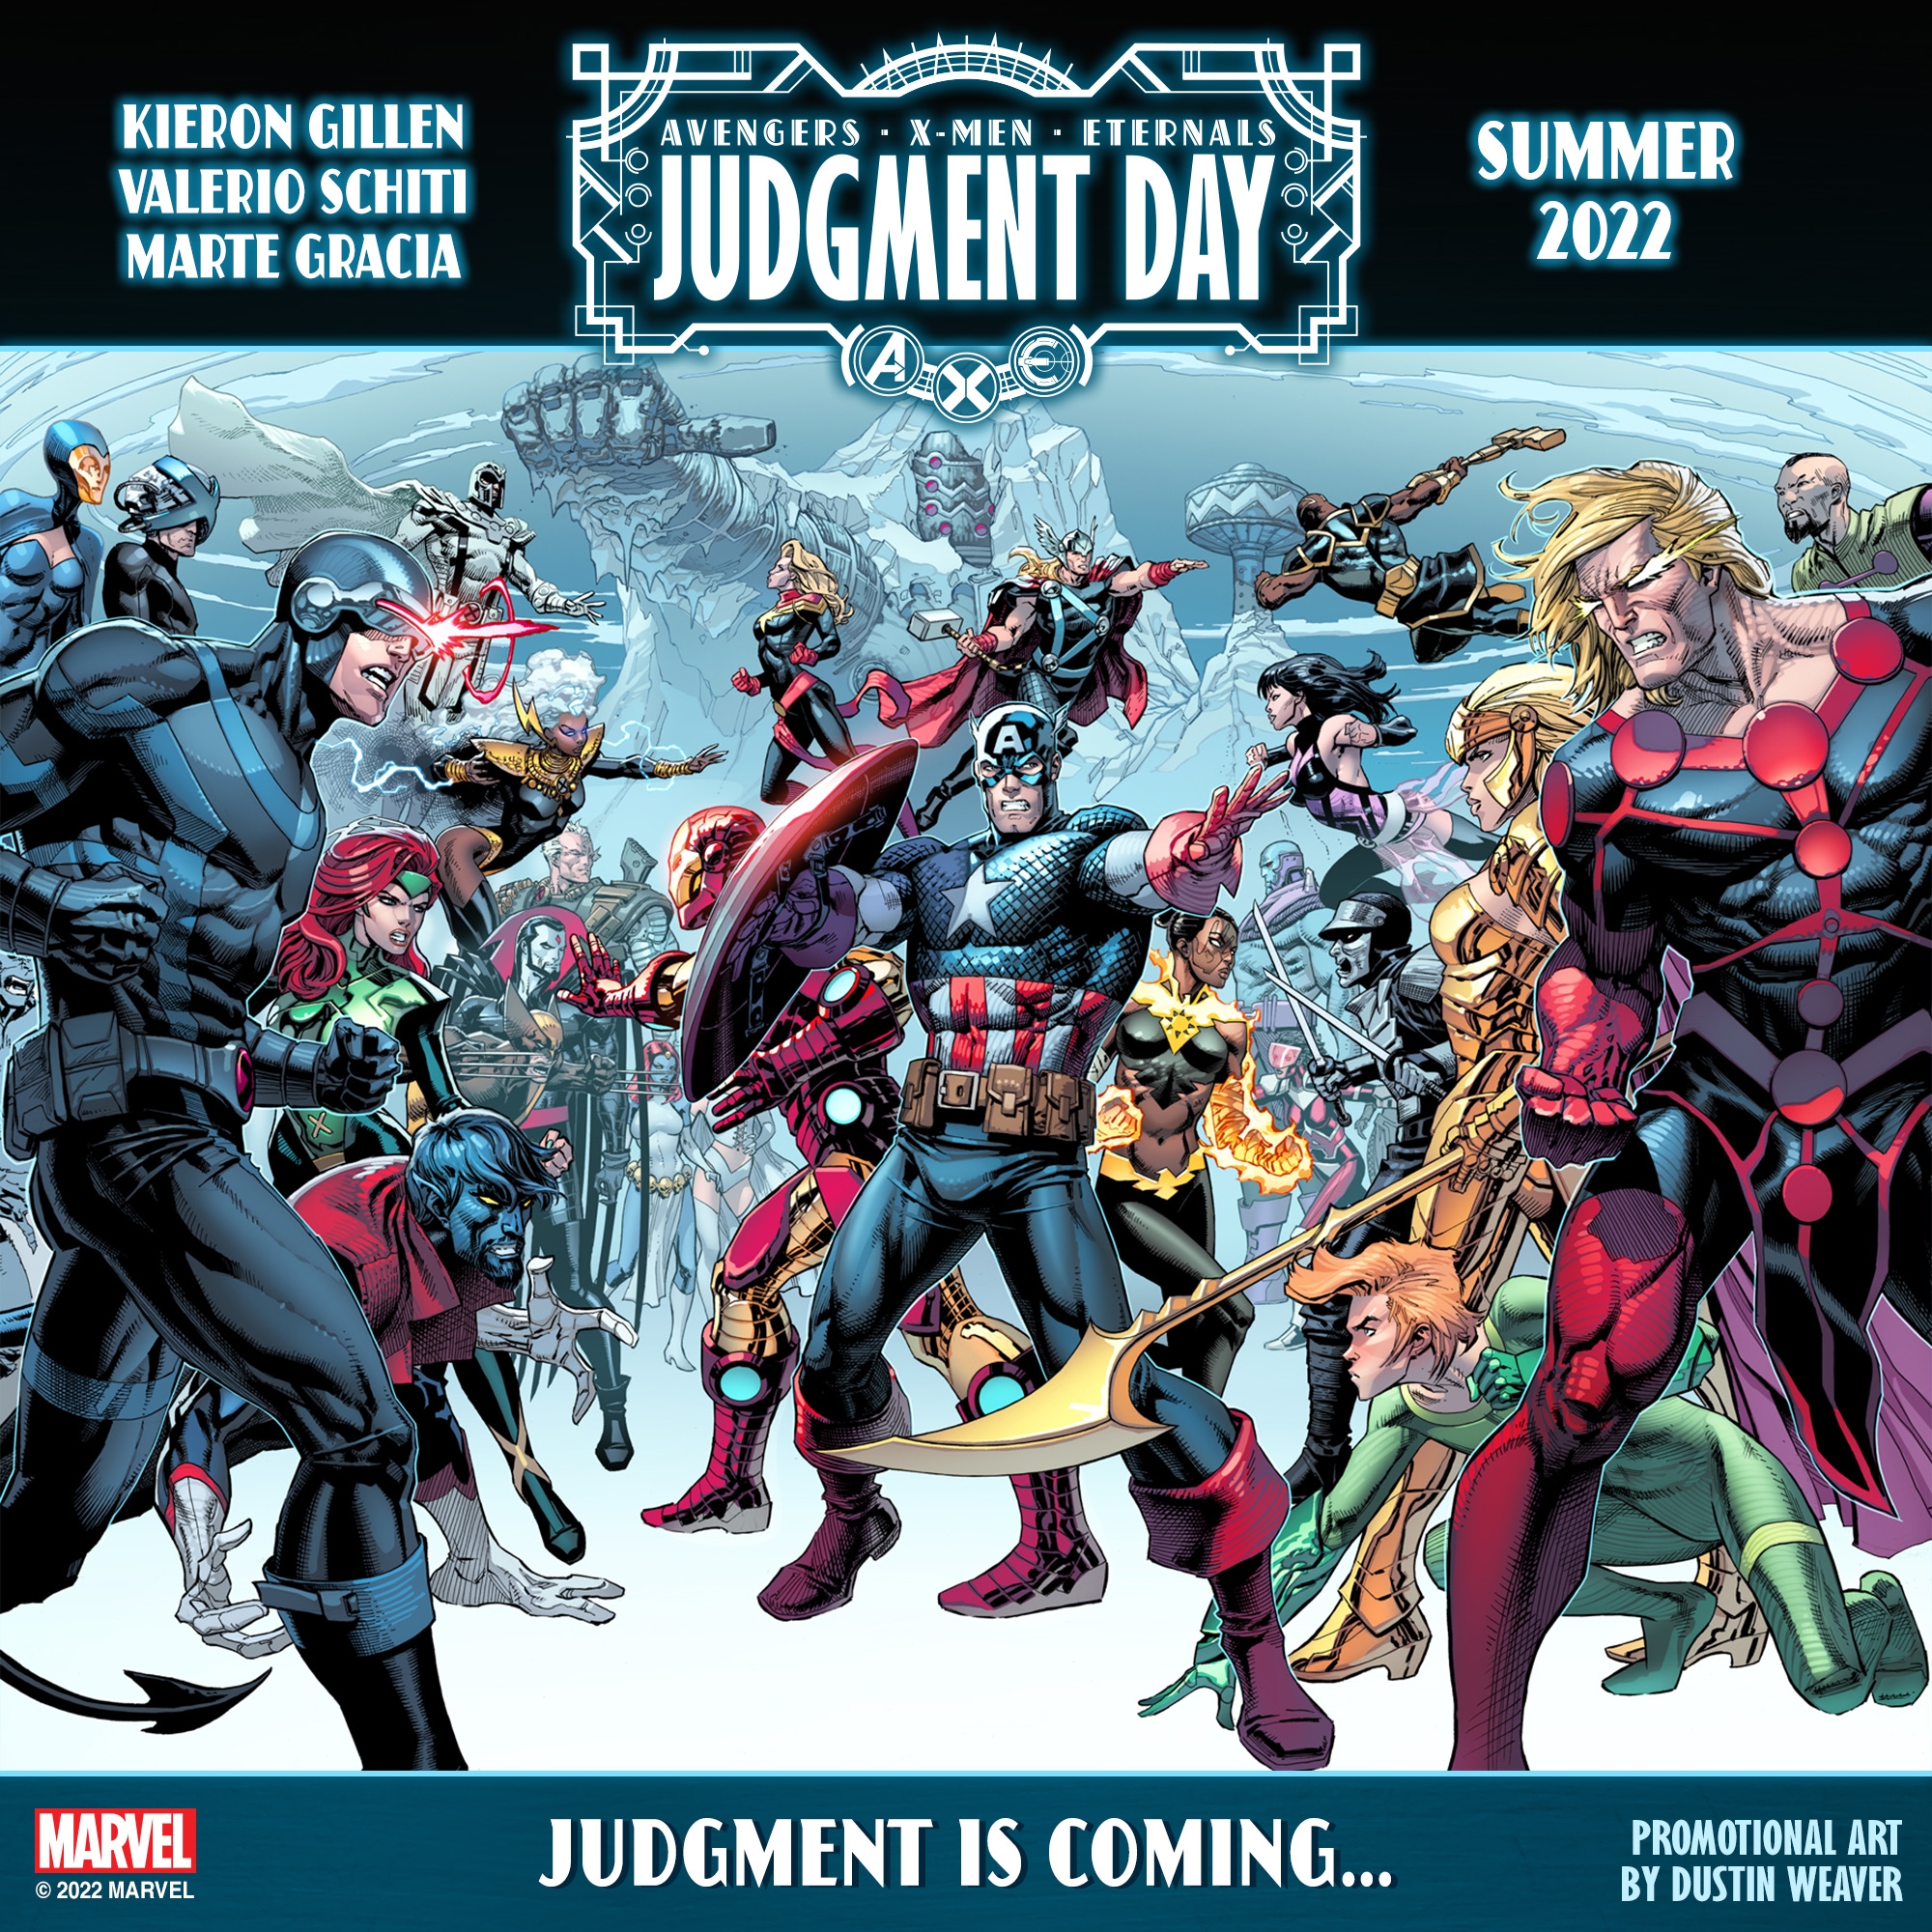 Judgment is coming - Dia do Julgamento na Marvel Comics - Eternos - Vingadores - X-Men - Capa - www.farofeiros.com.br